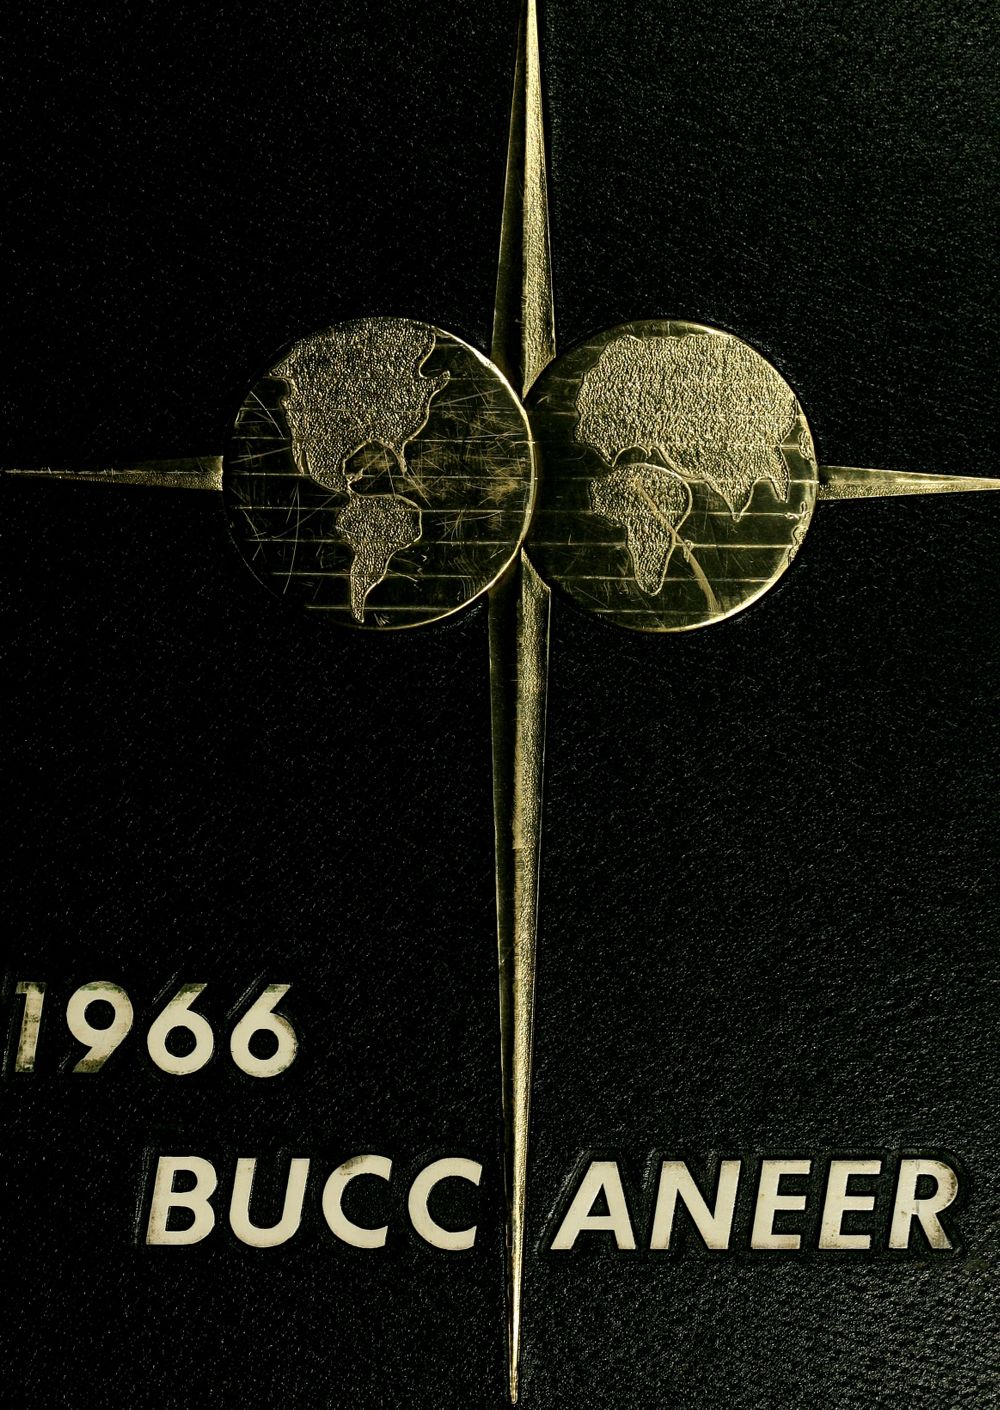 Buccaneer 1966 pic